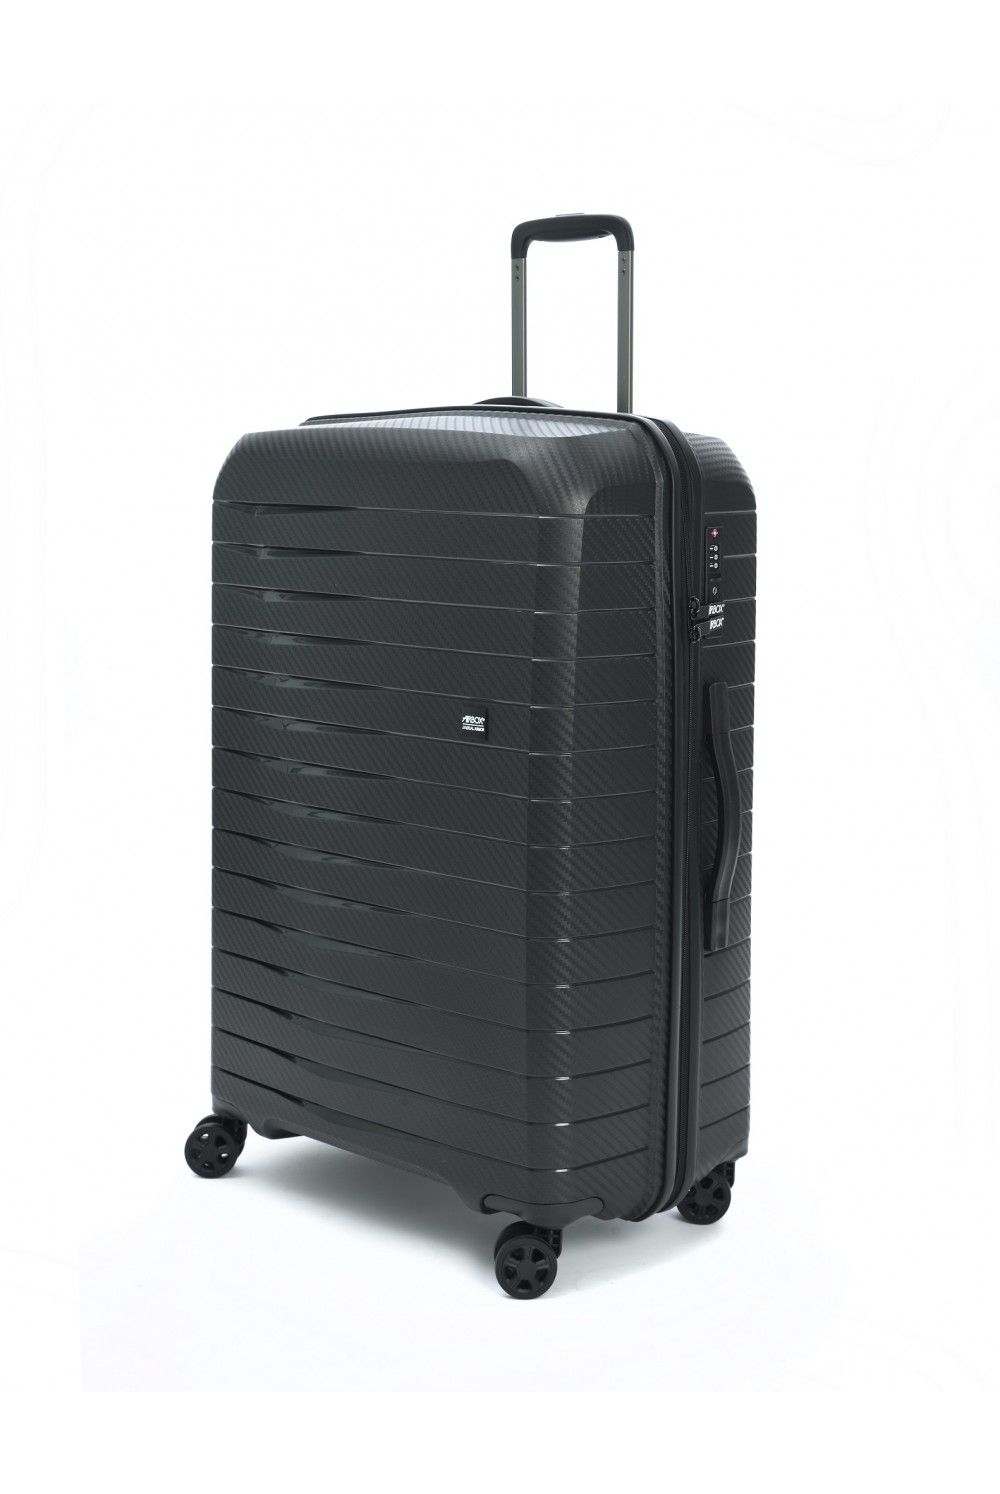 Suitcase L AIRBOX AZ18 74cm 4 wheel black